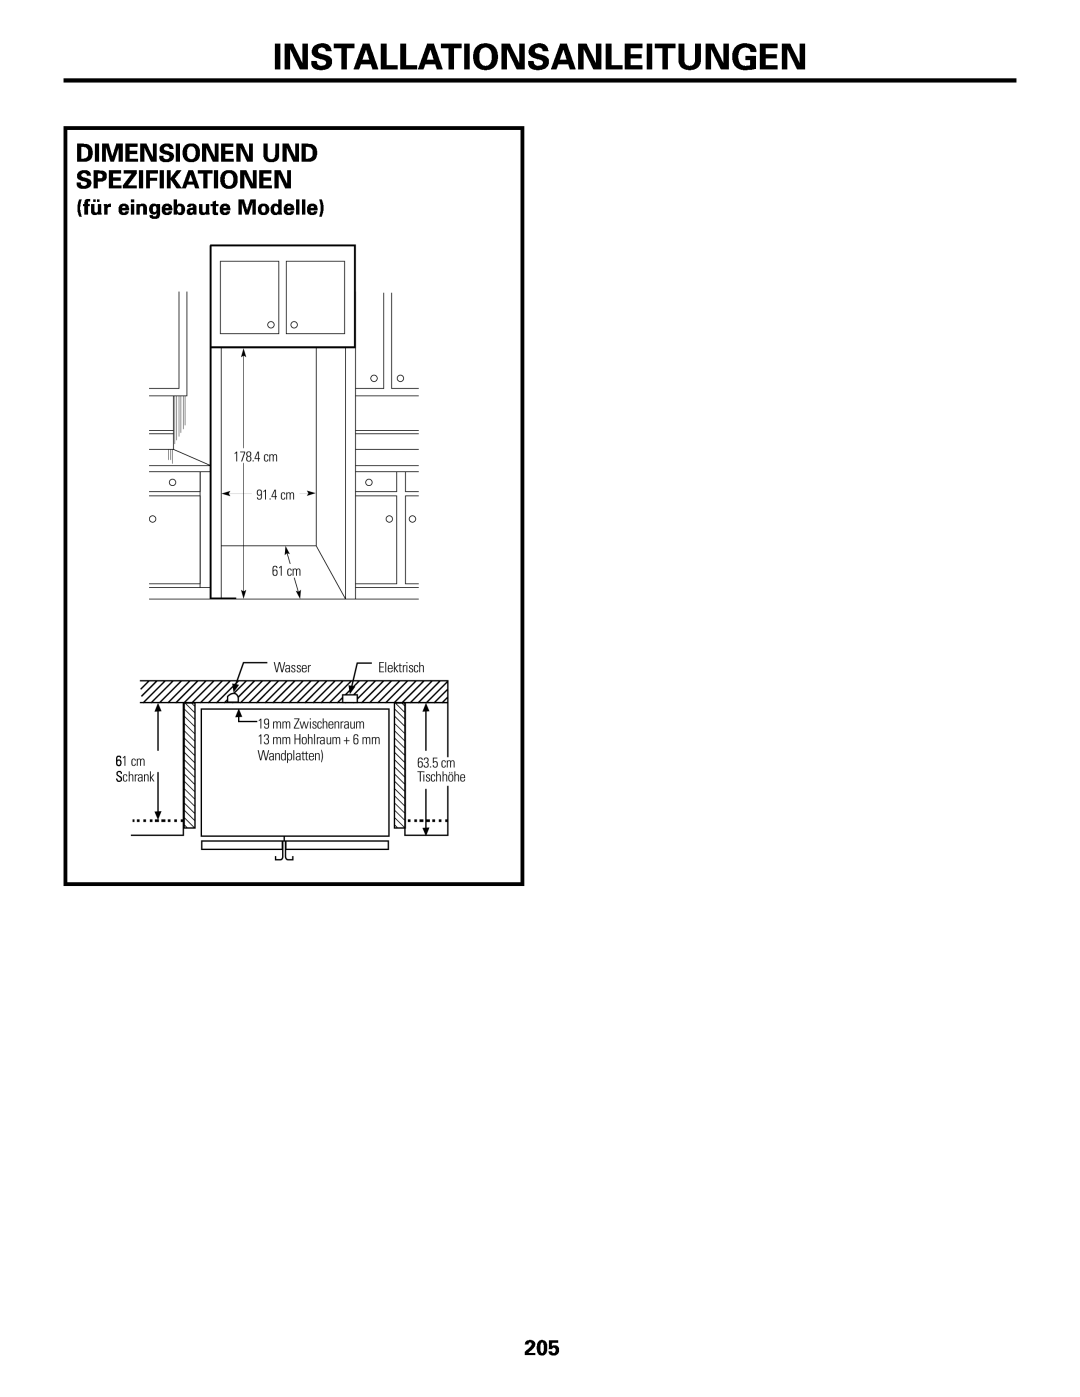 GE 200D2600P031 Dimensionen Und Spezifikationen, für eingebaute Modelle, Installationsanleitungen, cm Schrank 